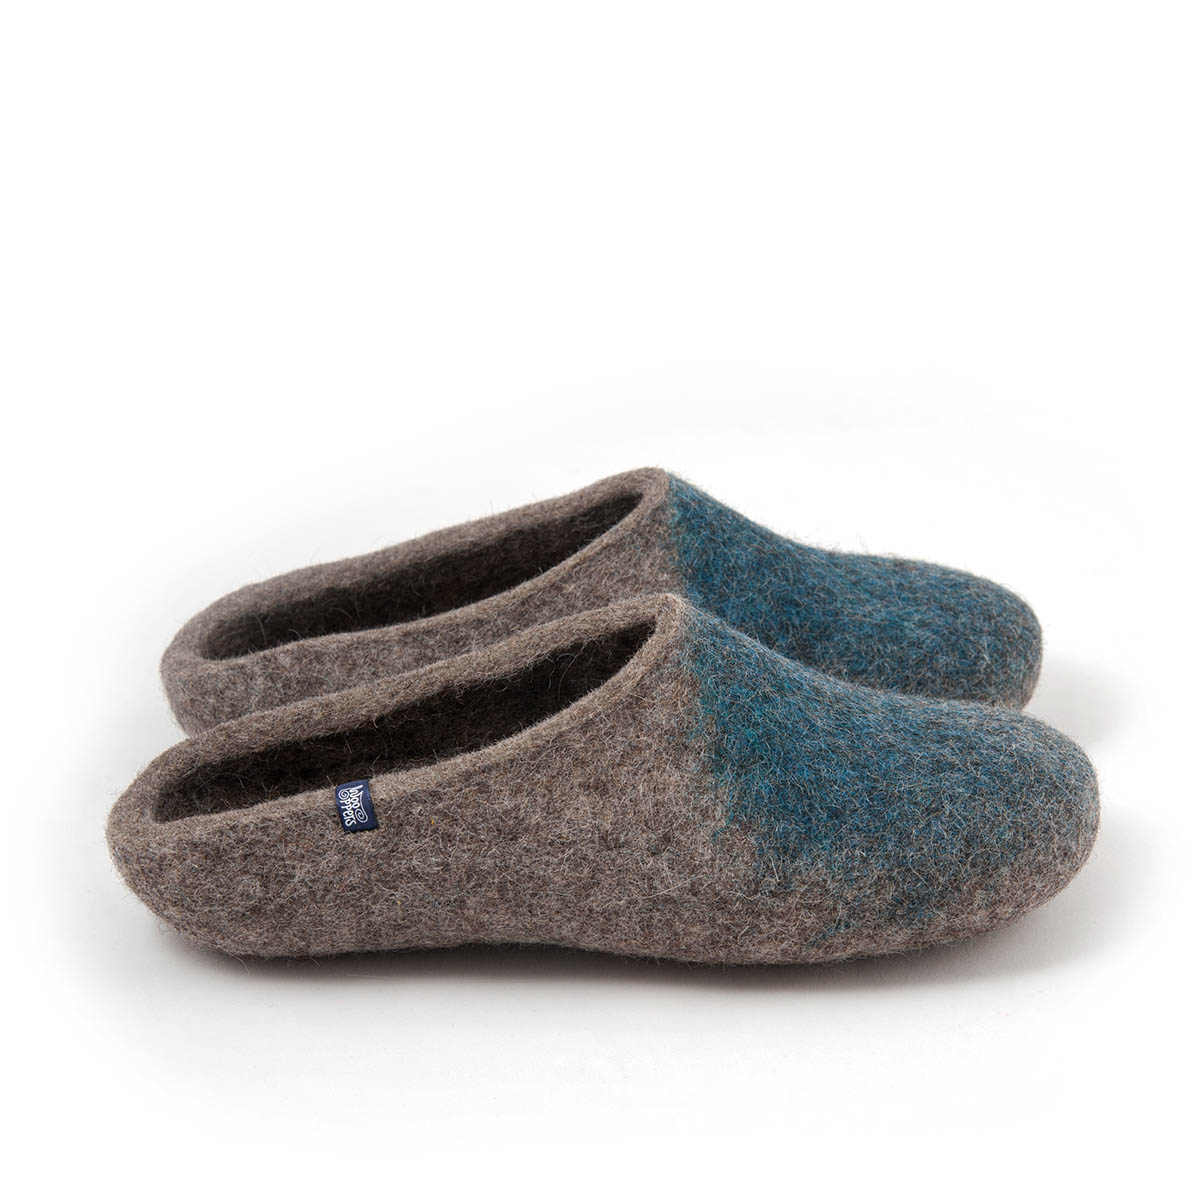 light blue tory burch sandals